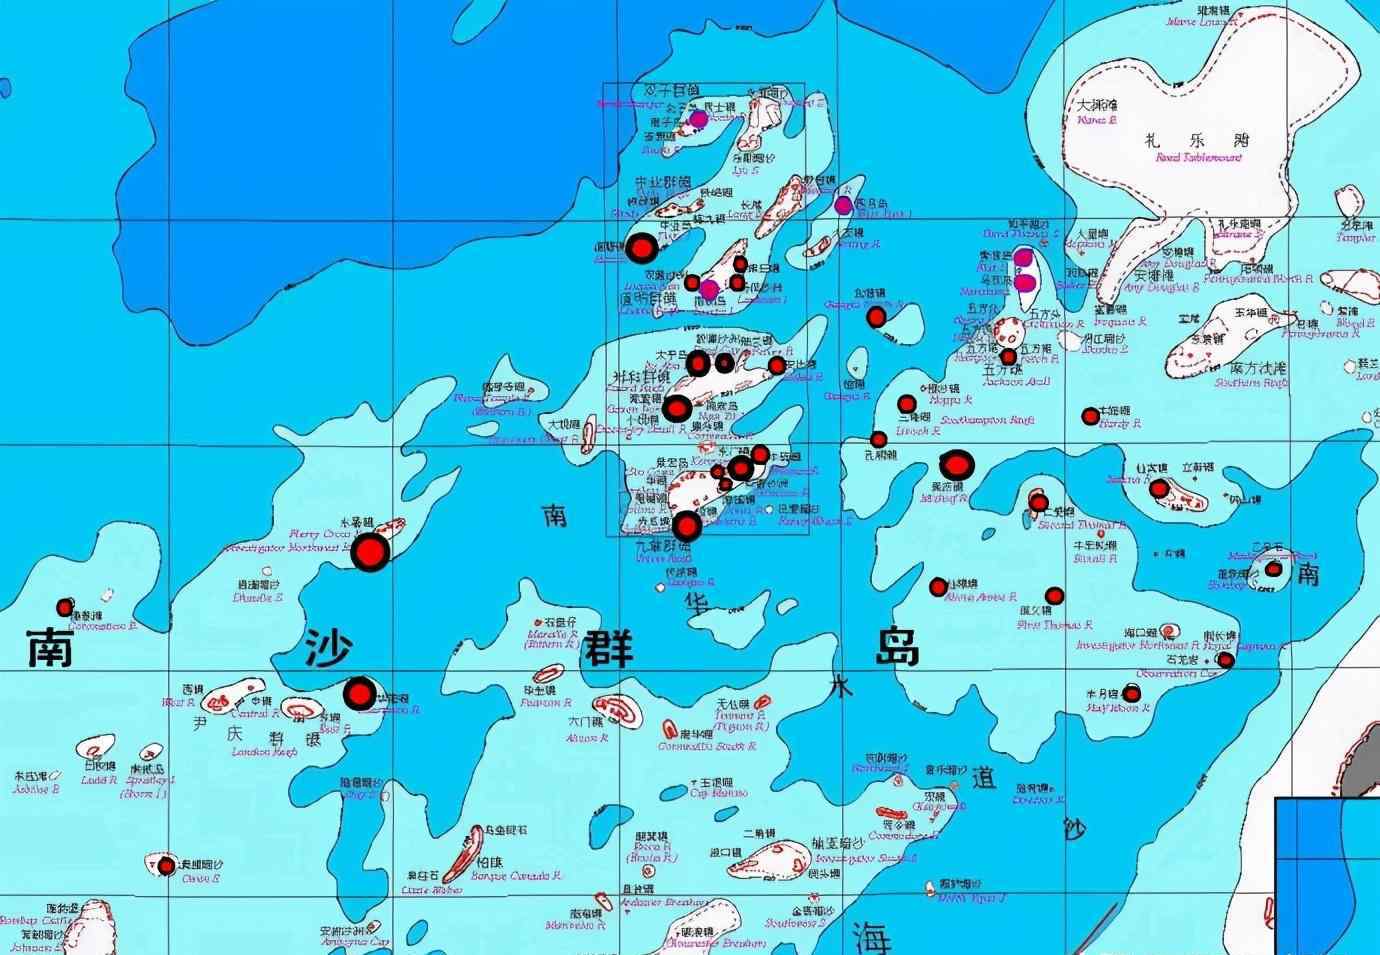 南海各国实际控制图 中国实际控制南海多少岛礁？这个数字很有参考价值